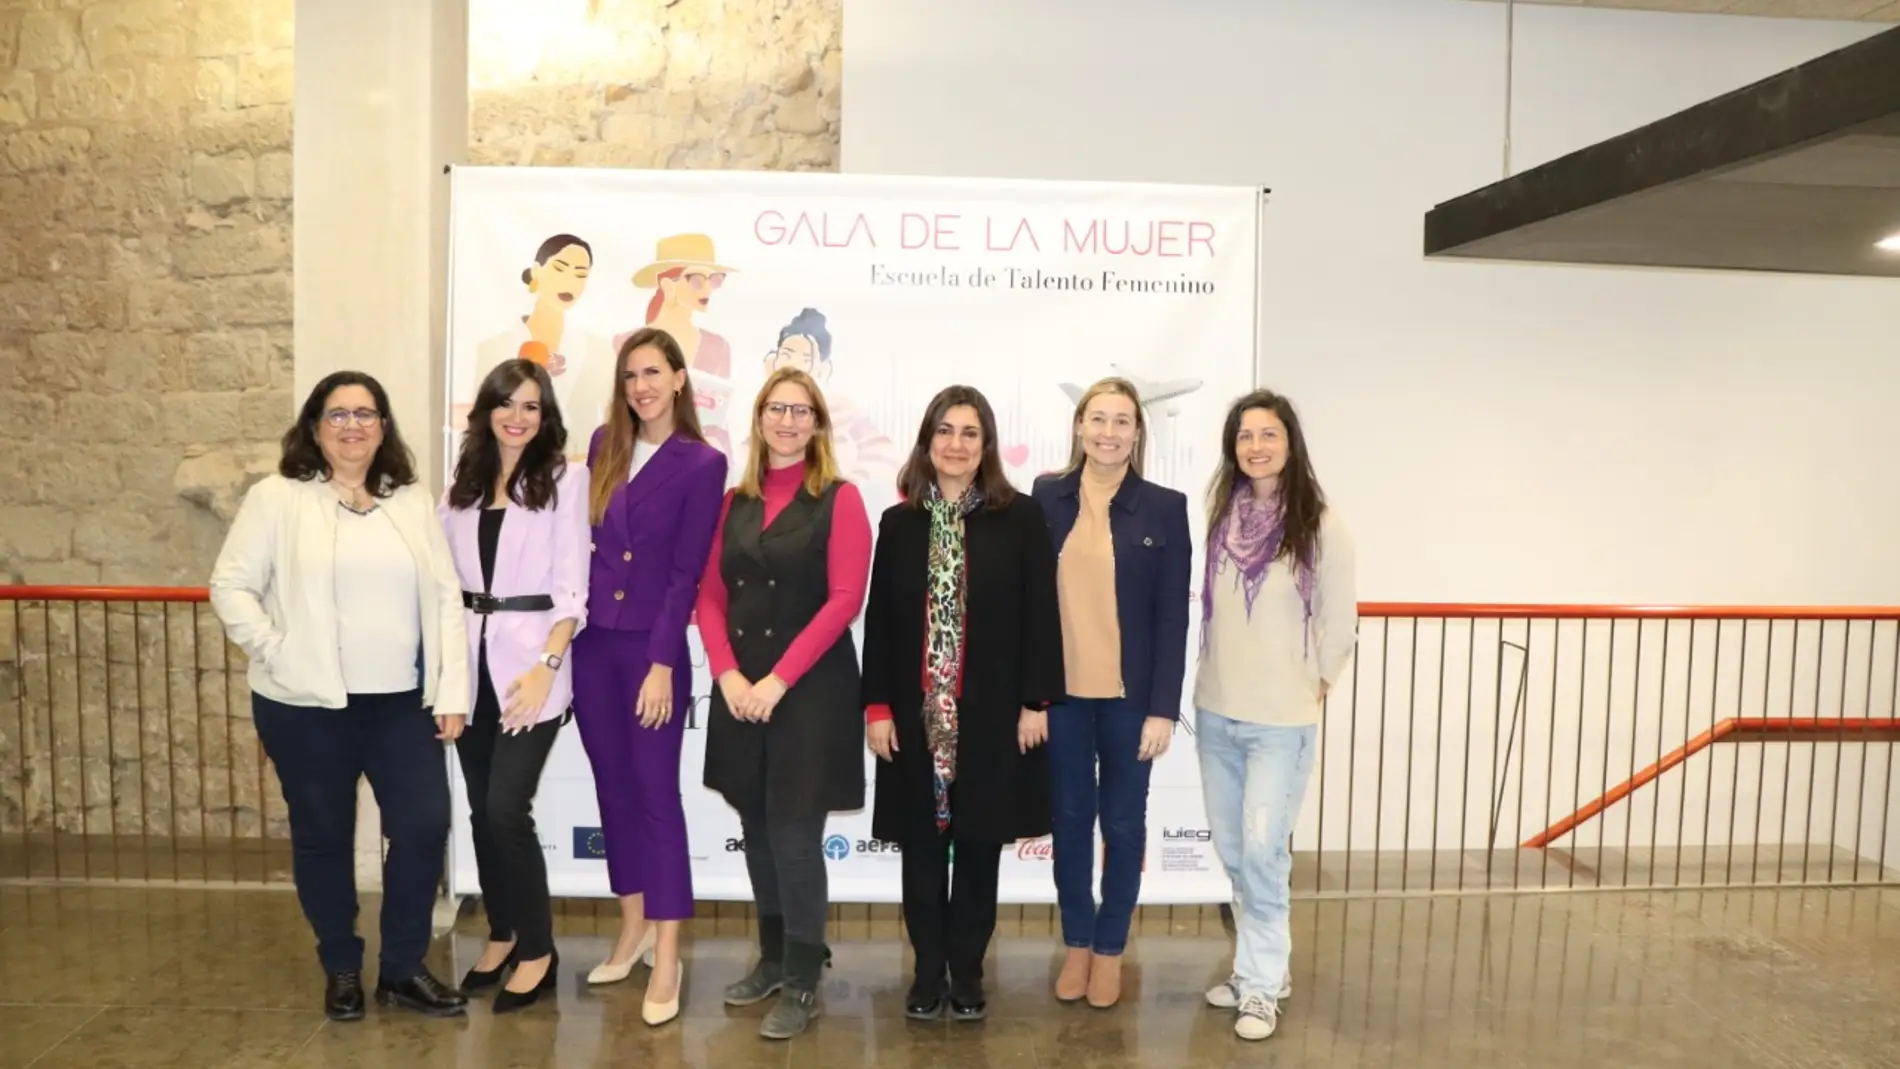 La Escuela de Talento Femenino reúne a más de 200 mujeres para rendir homenaje a alumnas y profesoras